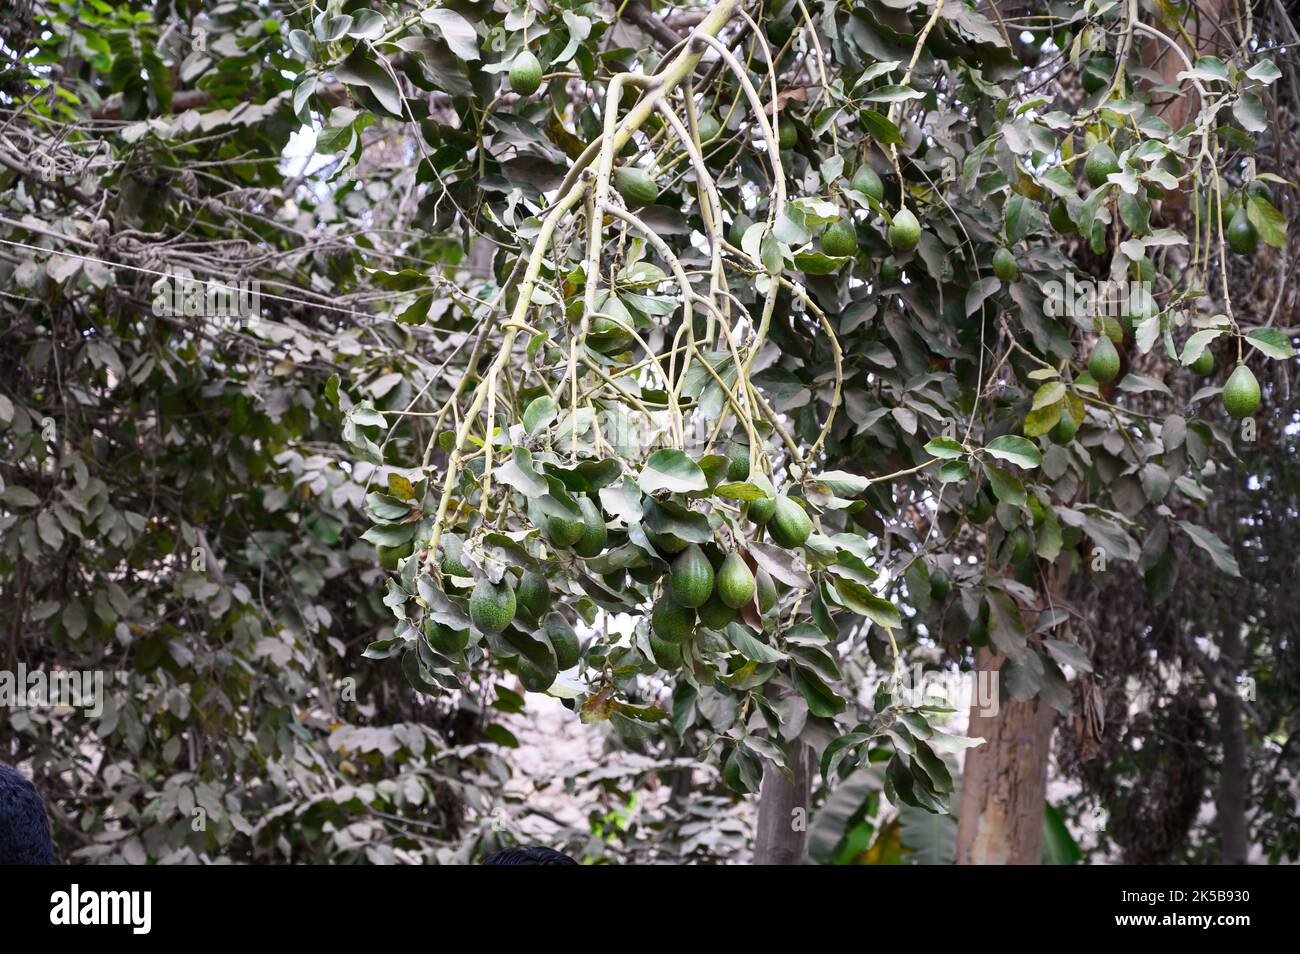 Avocats accrochés à la branche d'arbre dans une plantation d'arbres fruitiers Banque D'Images